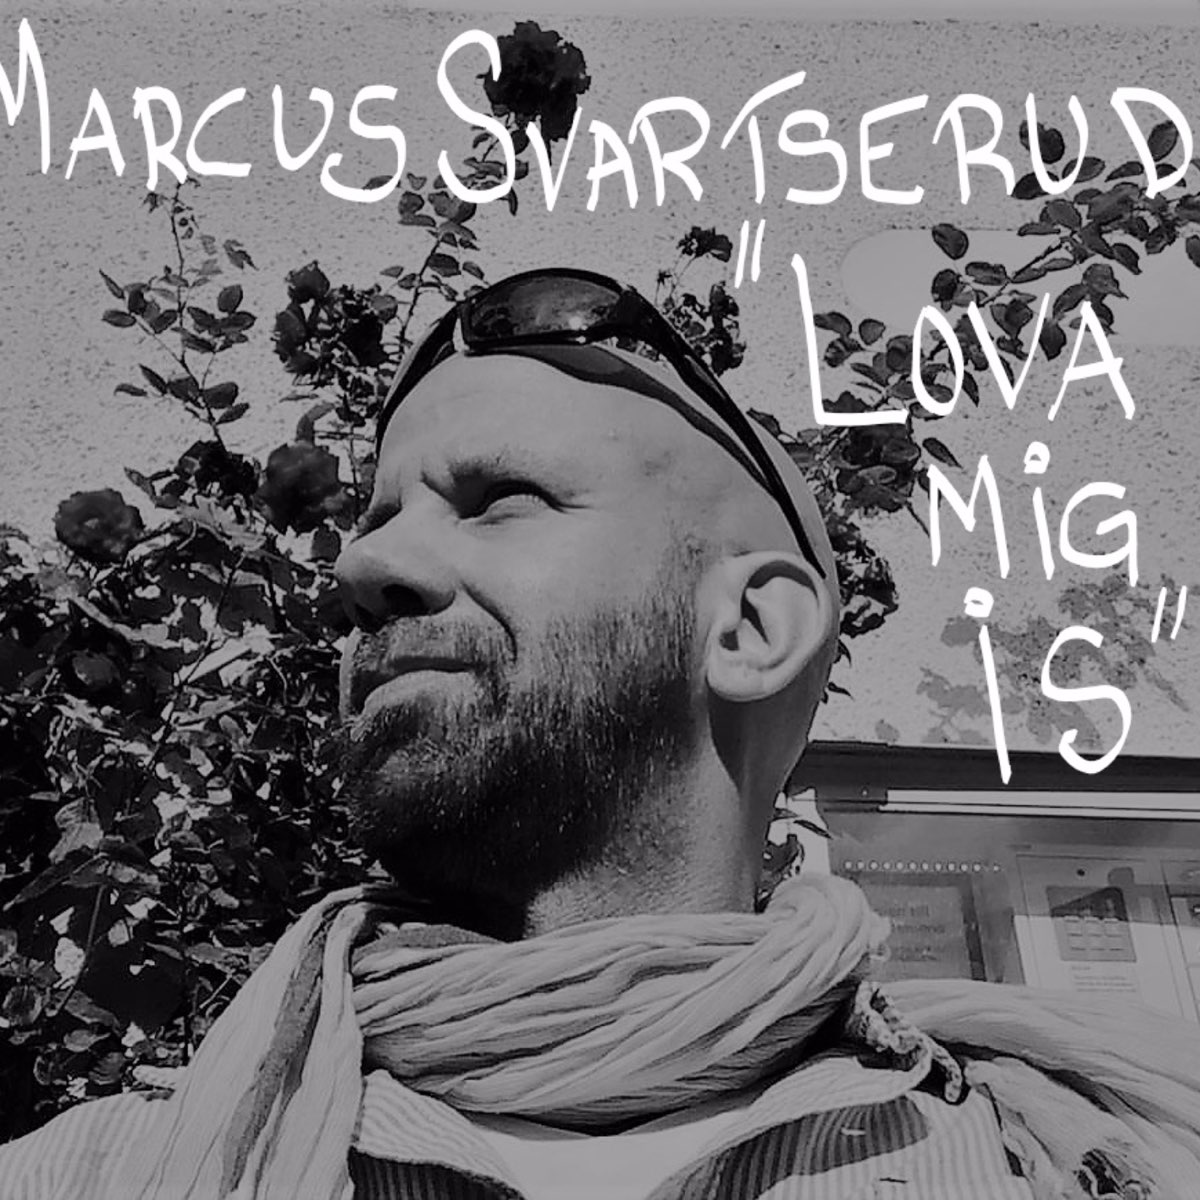 Lova Mig Is by Marcus Svartserud on Apple Music